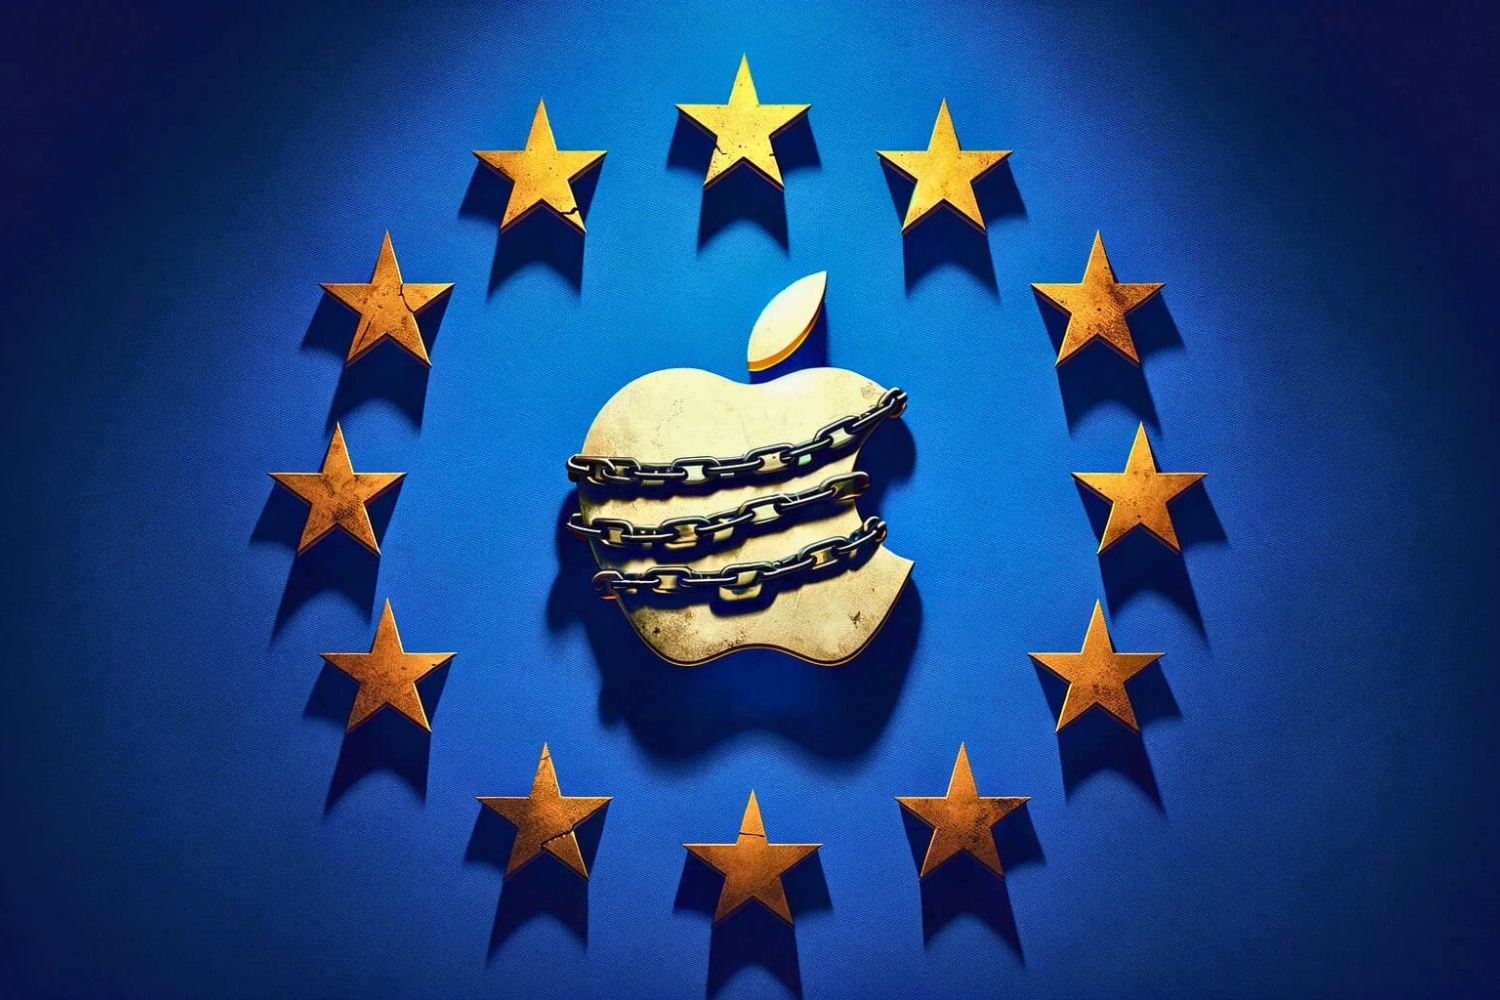 Dma dsa union européene europe apple